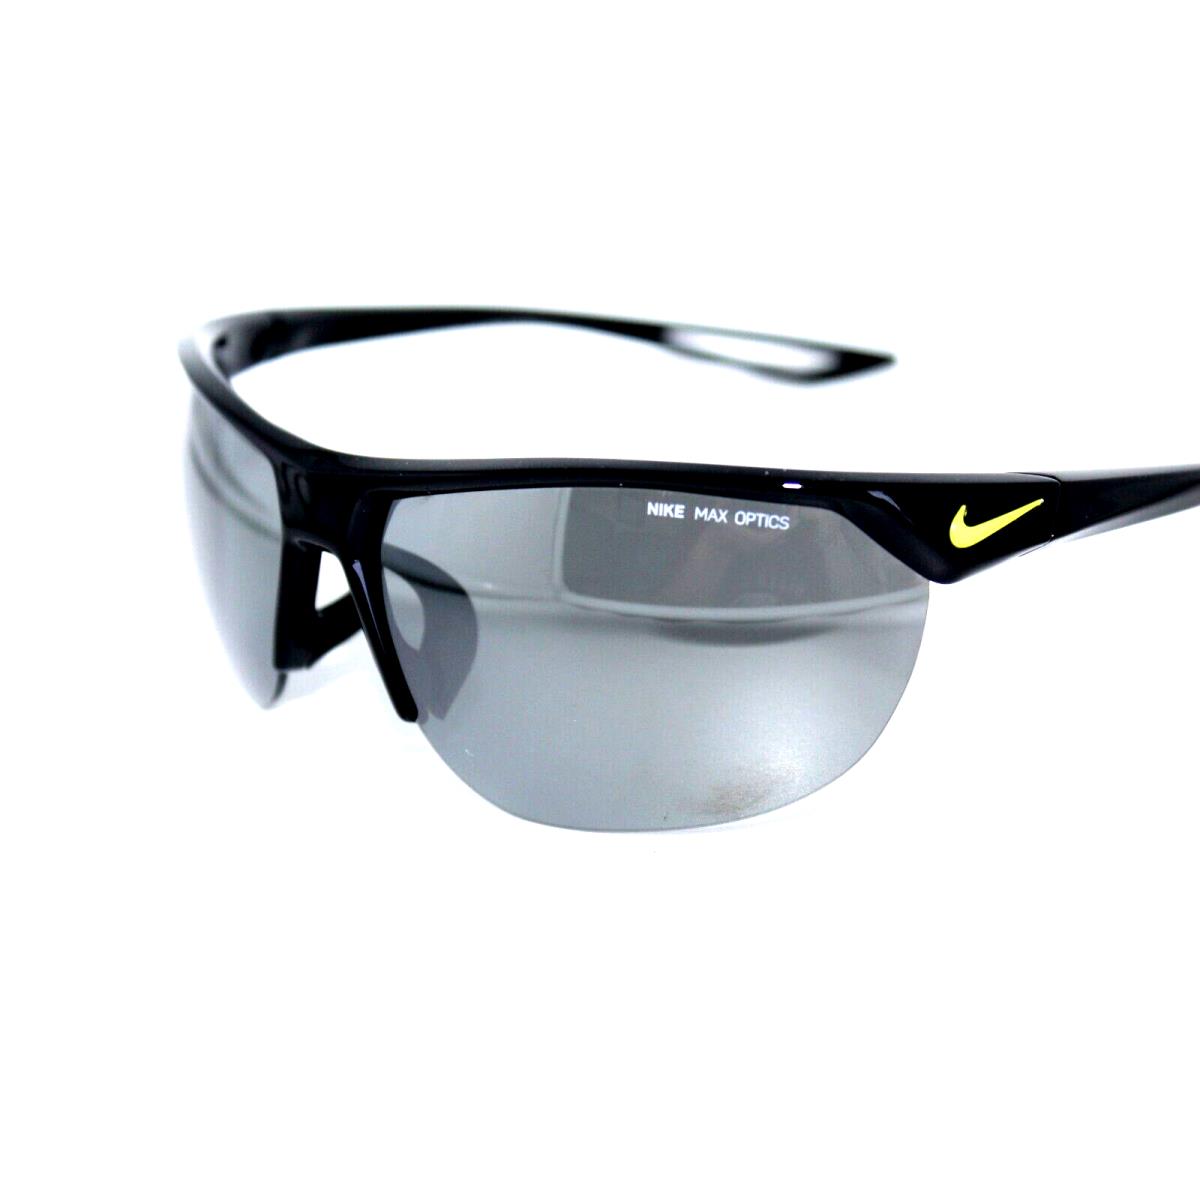 Nike sunglasses CROSS TRAINER - Black Frame, Gray Lens 0